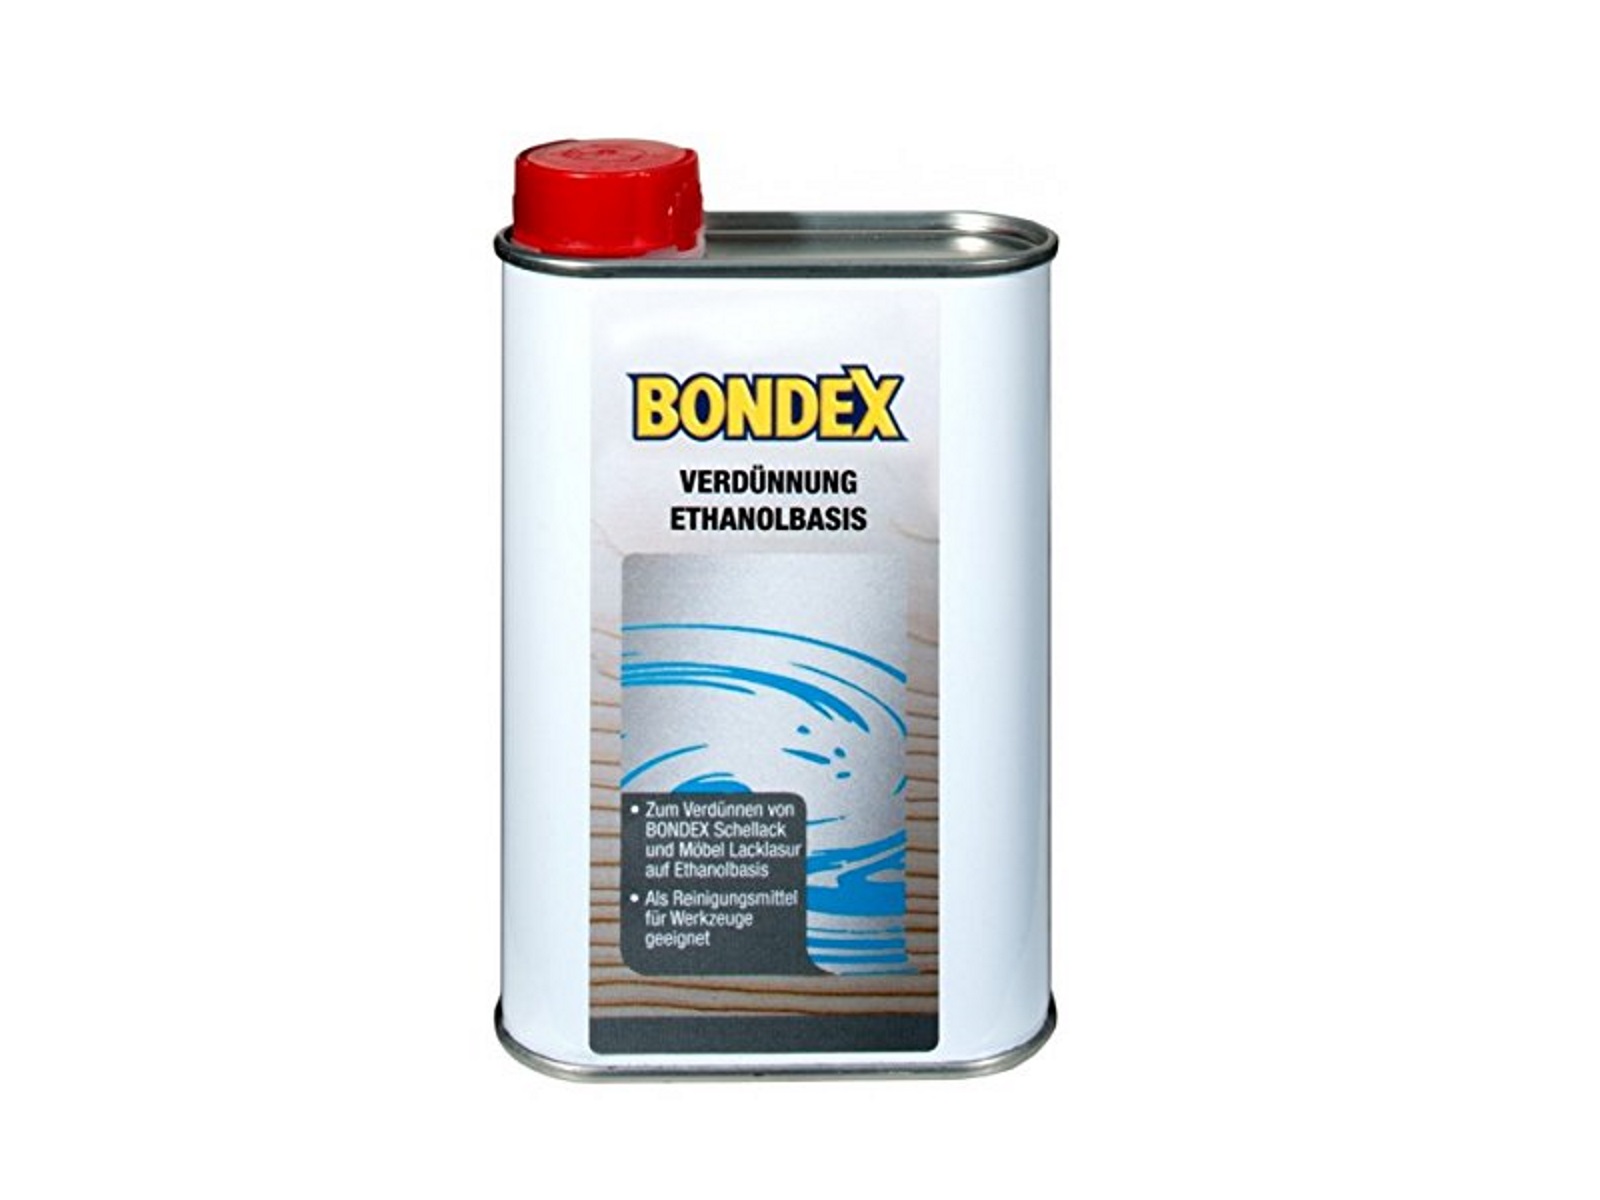 Bondex 250 ml Verdünnung Ethanolbasis, Verdünnen von Schellack & Möbel Lacklasur